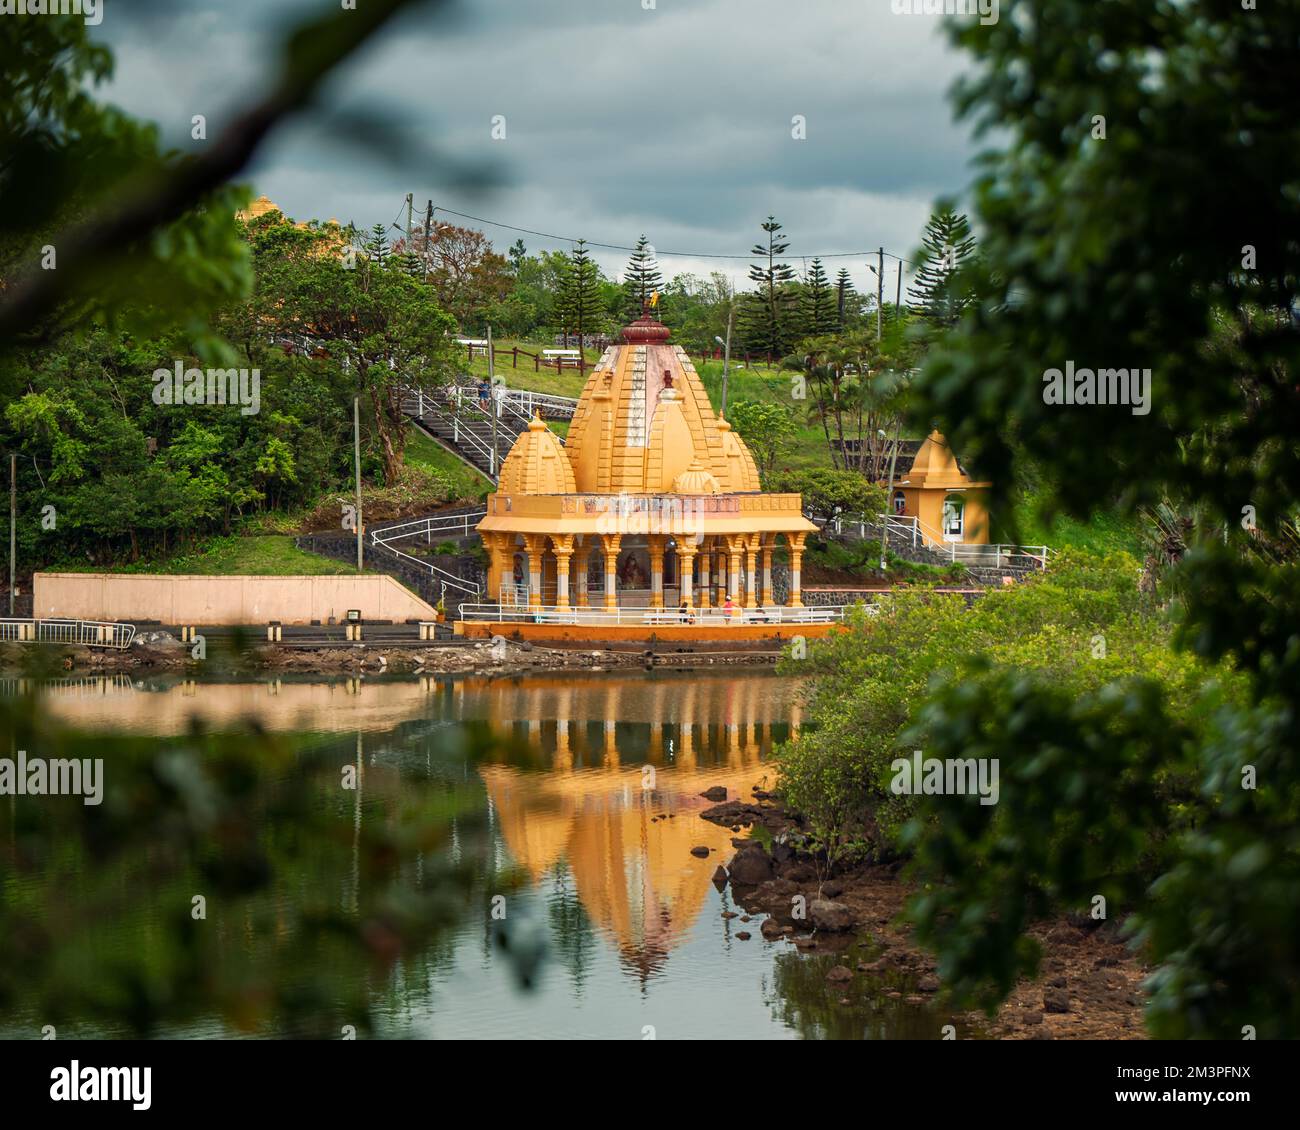 Grand Botschafin ist ein vergänglicher Ort zum Meditieren, Beten und Entspannen. Berühmtes touristisches Reiseziel auf Mauritius. Mehr versteckte Götterstatue in diesem p Stockfoto